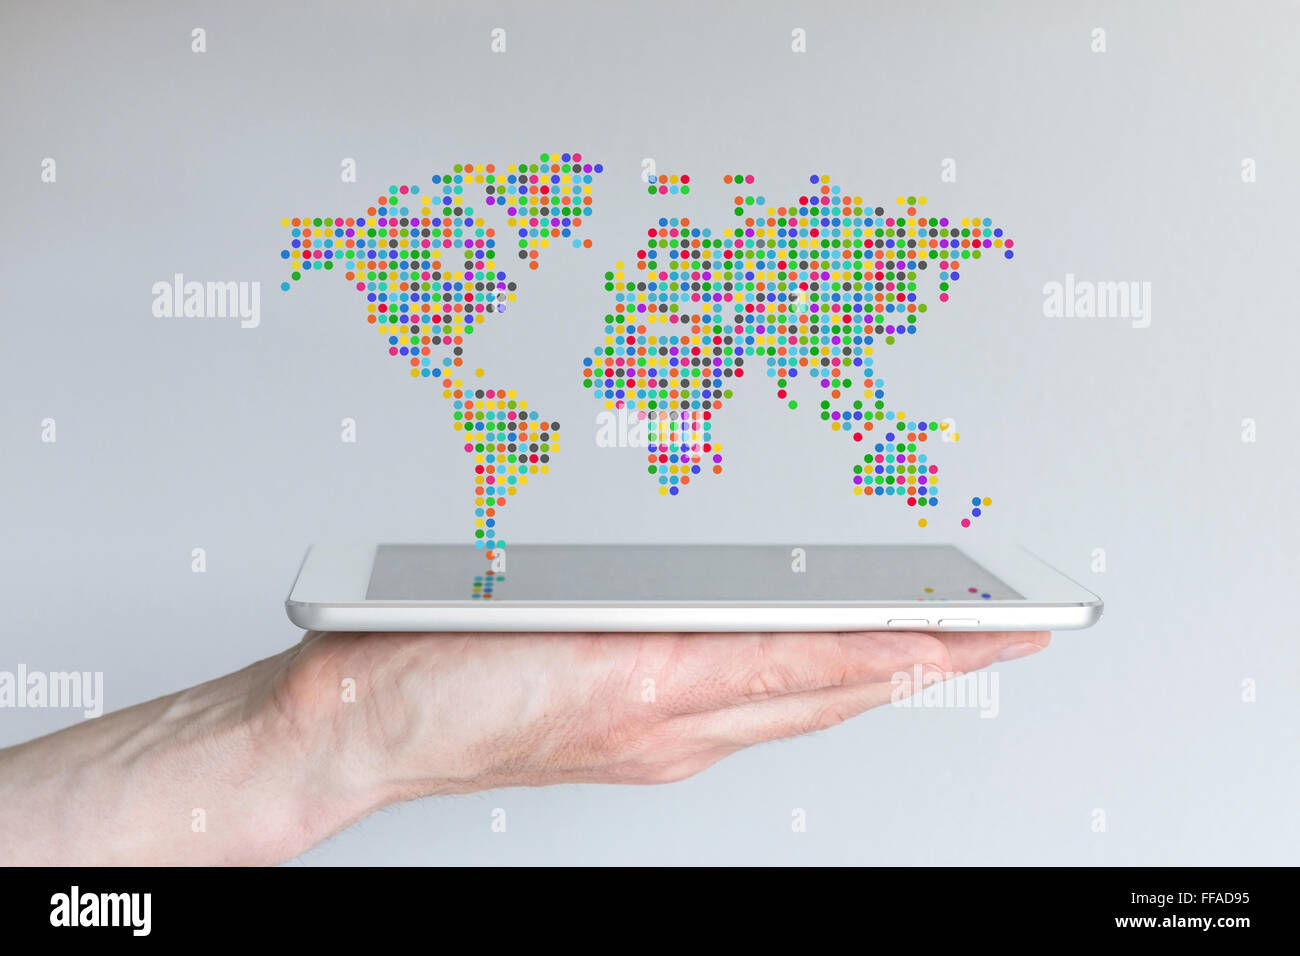 Carte du monde flottant au-dessus d'un téléphone intelligent ou une tablette moderne. Main tenant appareil mobile en face de fond gris. Banque D'Images